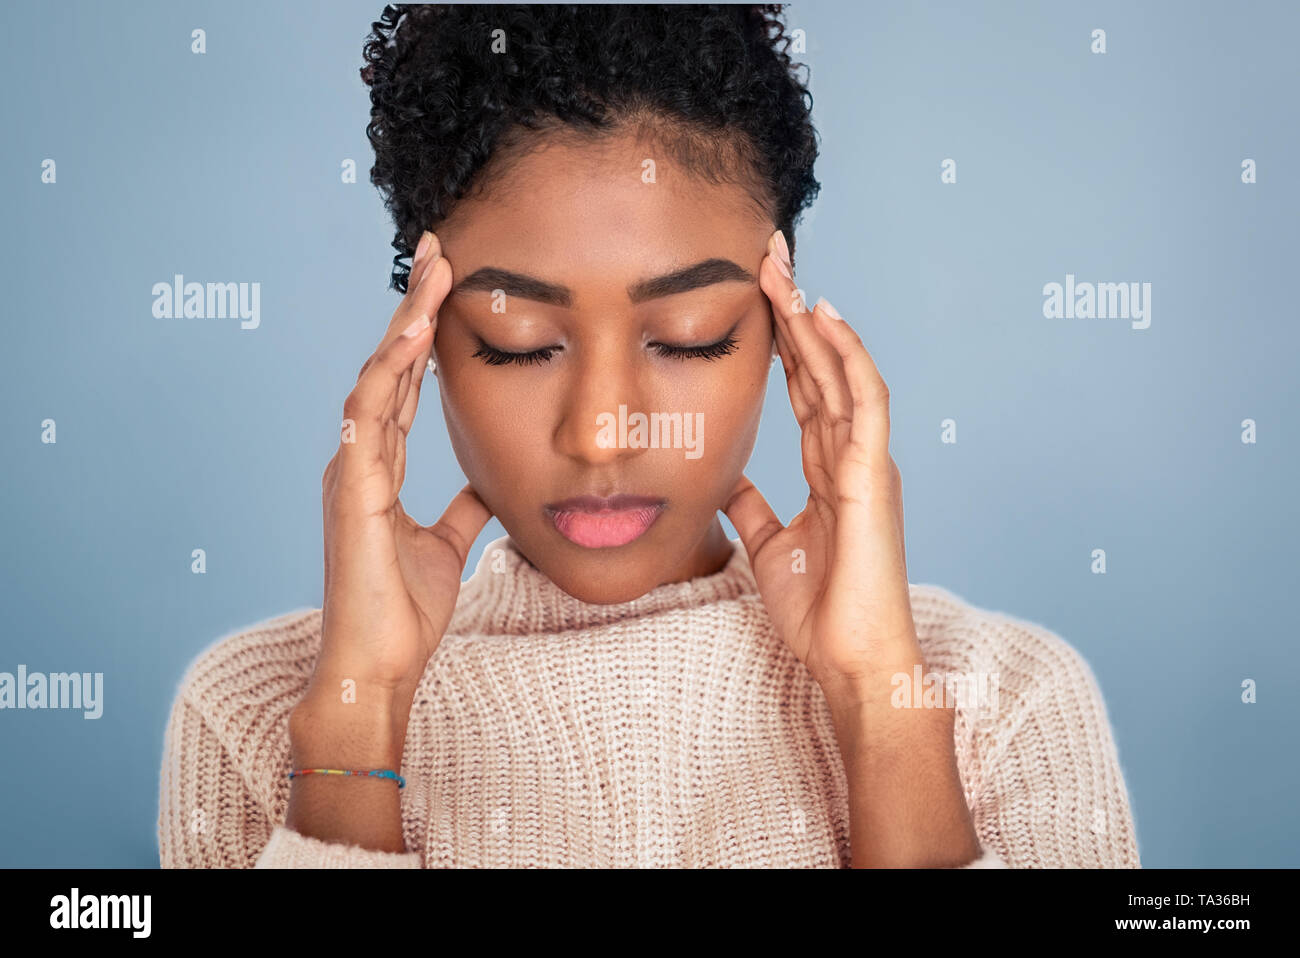 Foto de estudio de la mujer negra la sensación de dolor de cabeza intenso Foto de stock